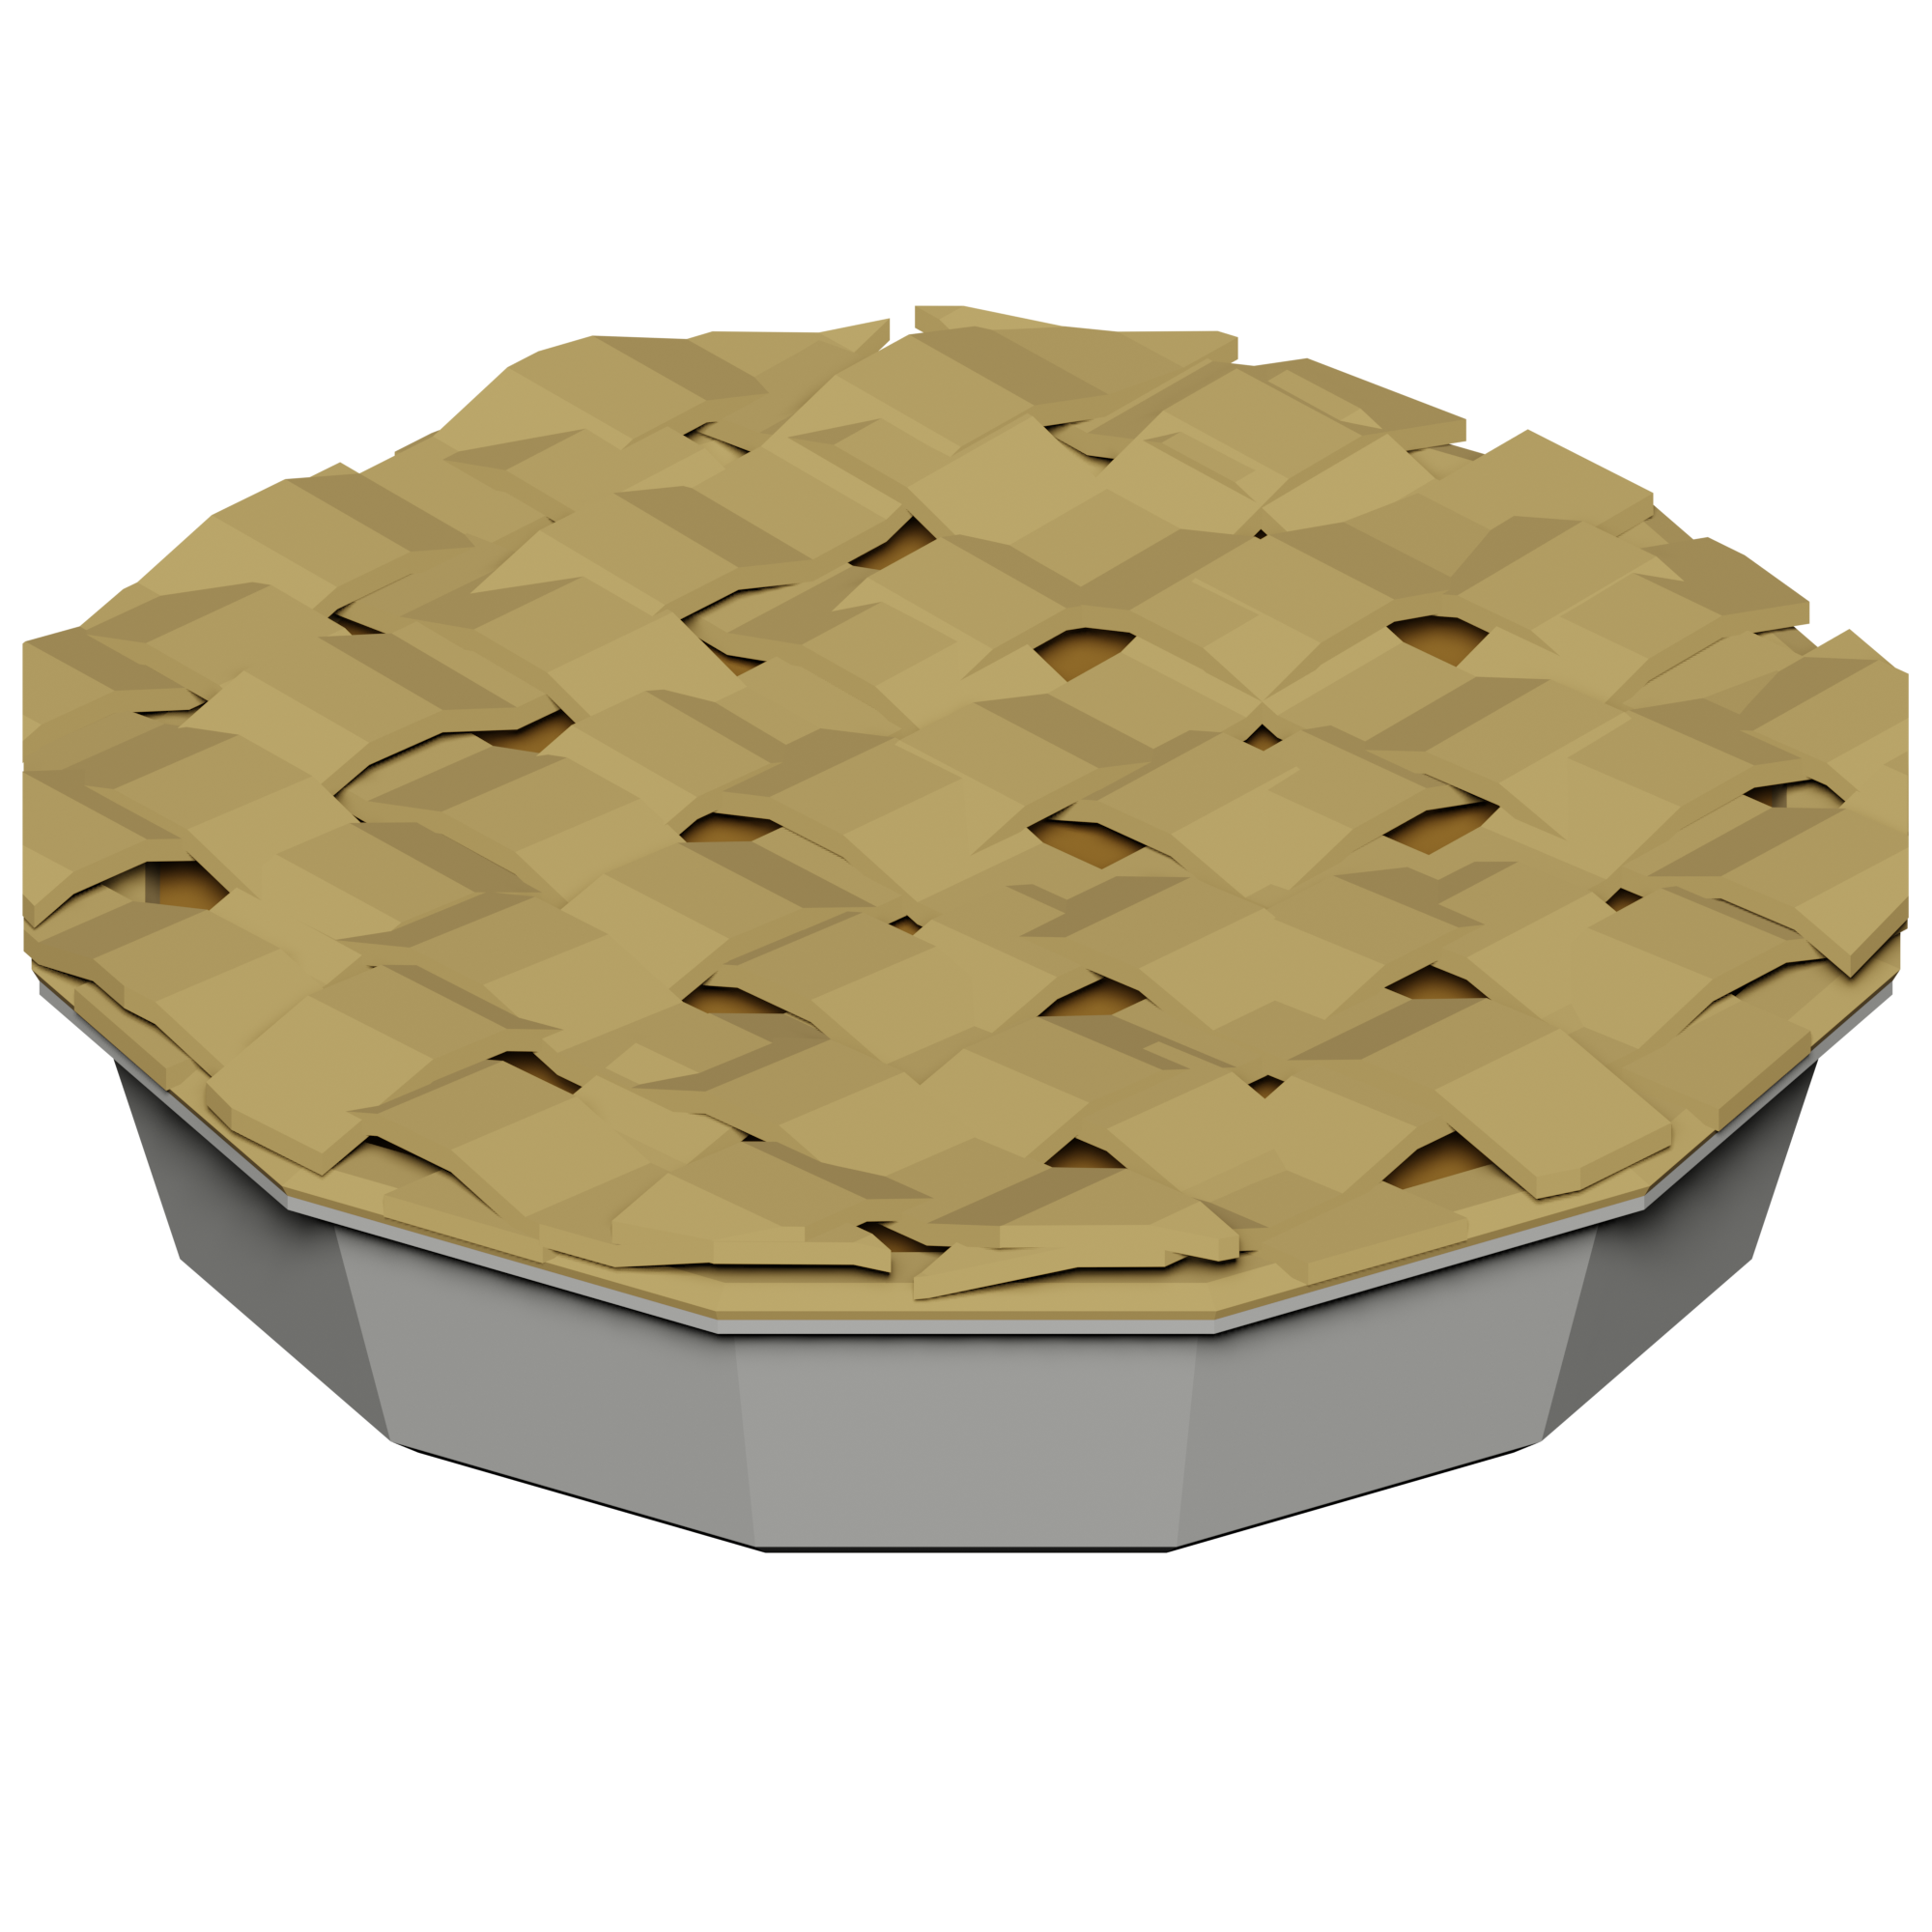 Apple Pie Islands Wiki Fandom - i like pie roblox